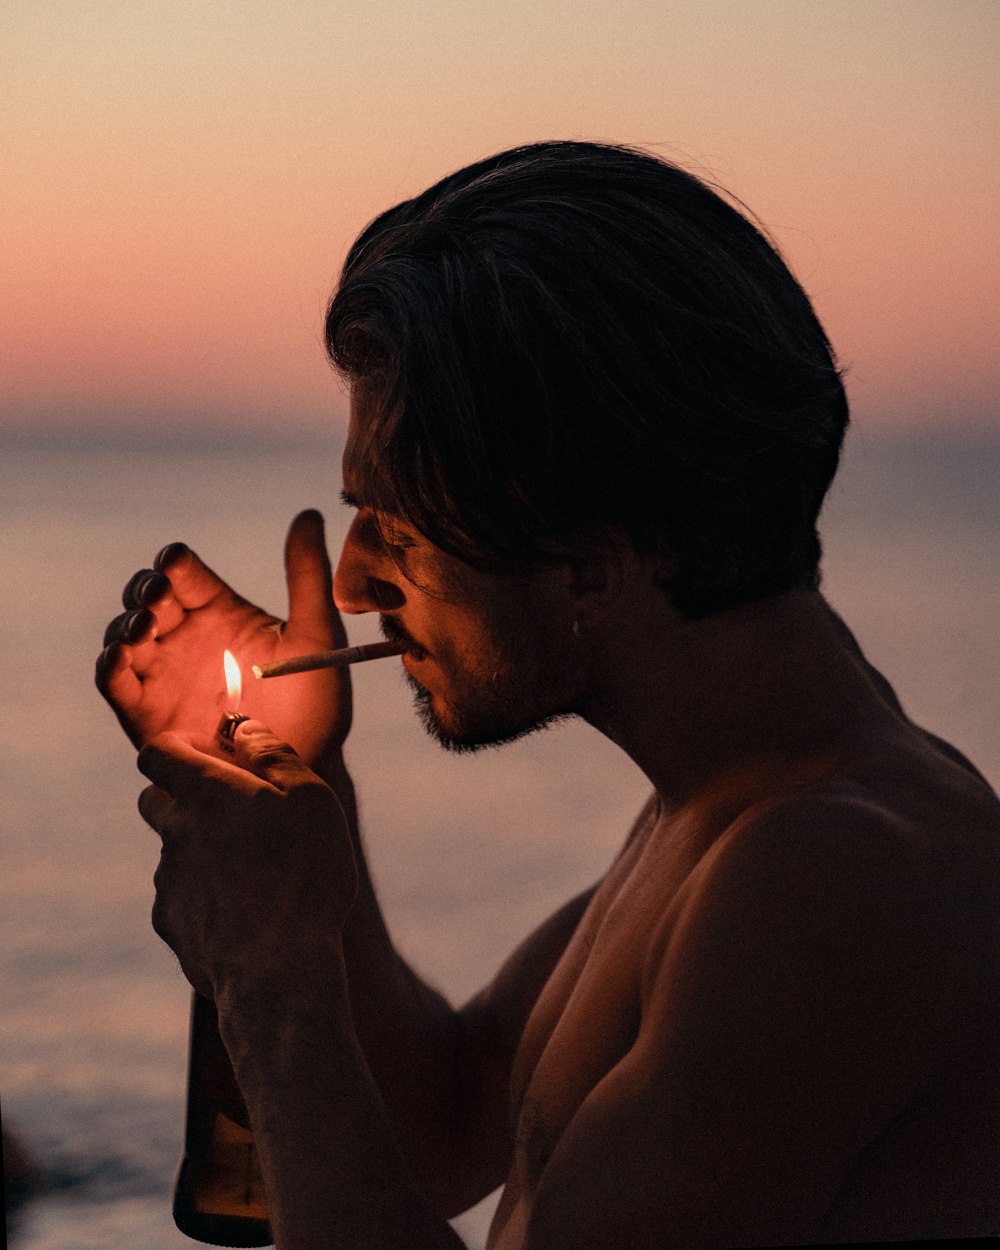 homme fumant une cigarette au coucher du soleil